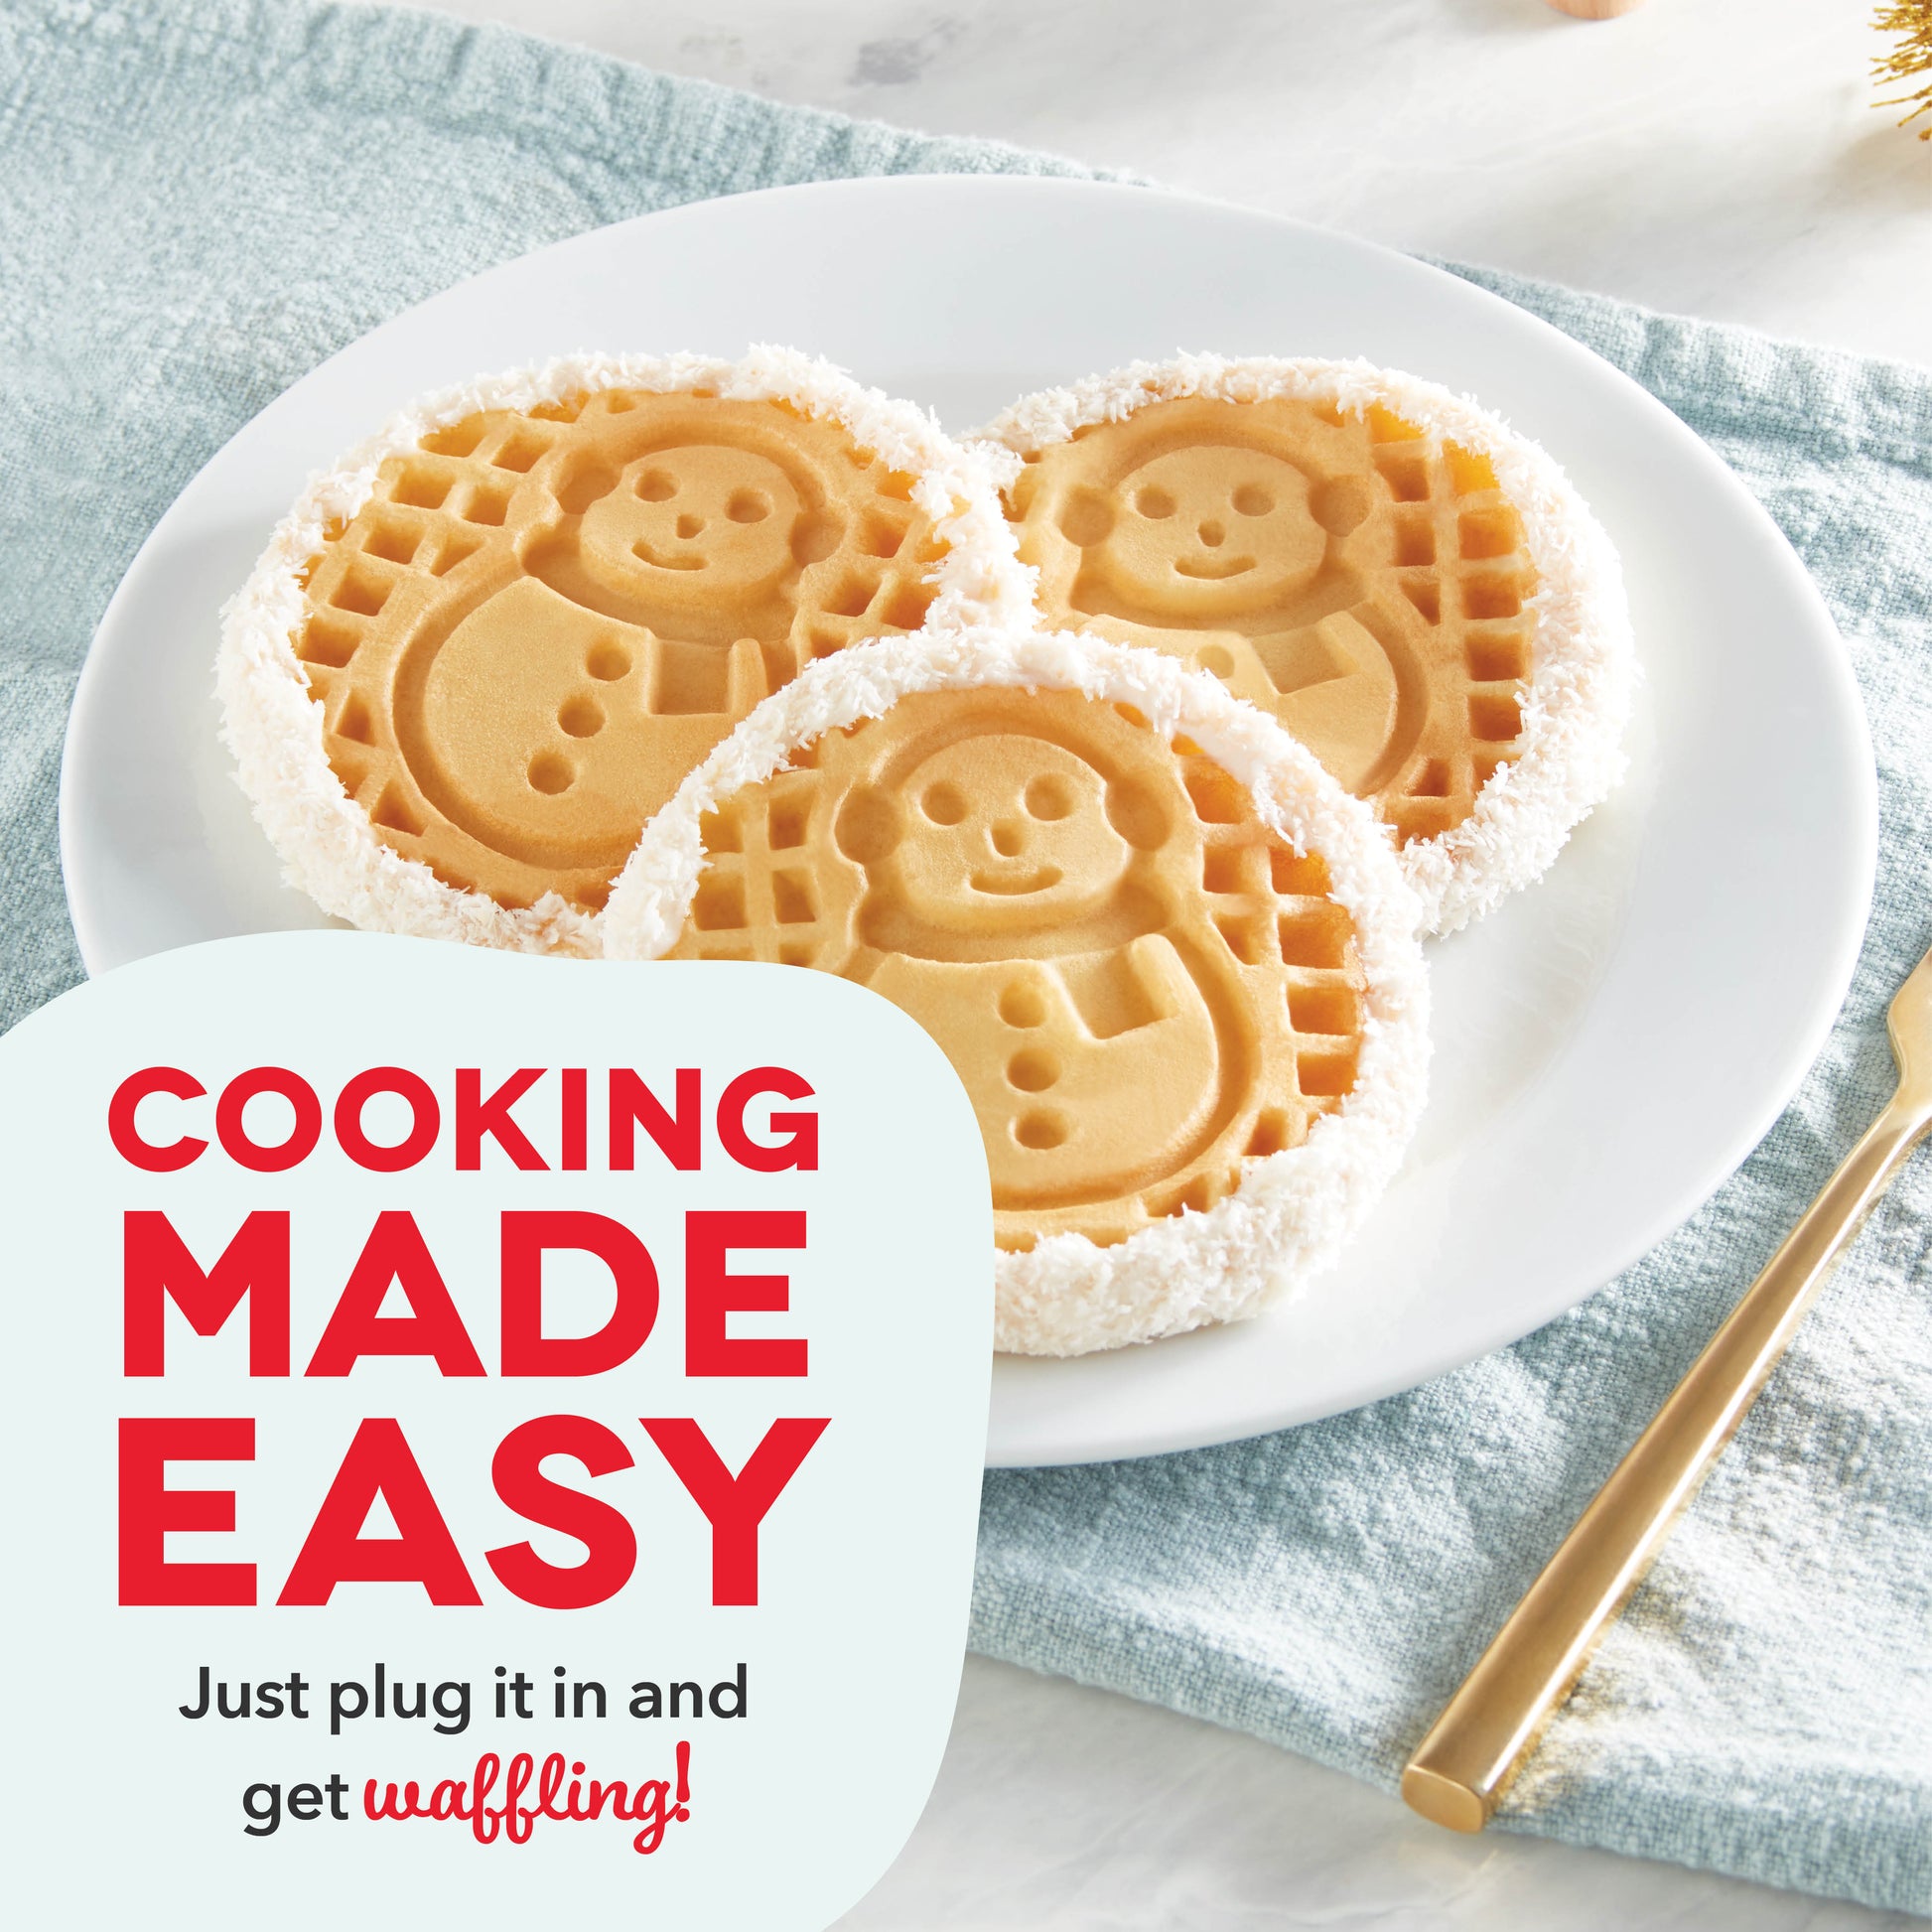 Dash Snowman Mini Waffle Maker with Ceramic Non-Stick Plates +